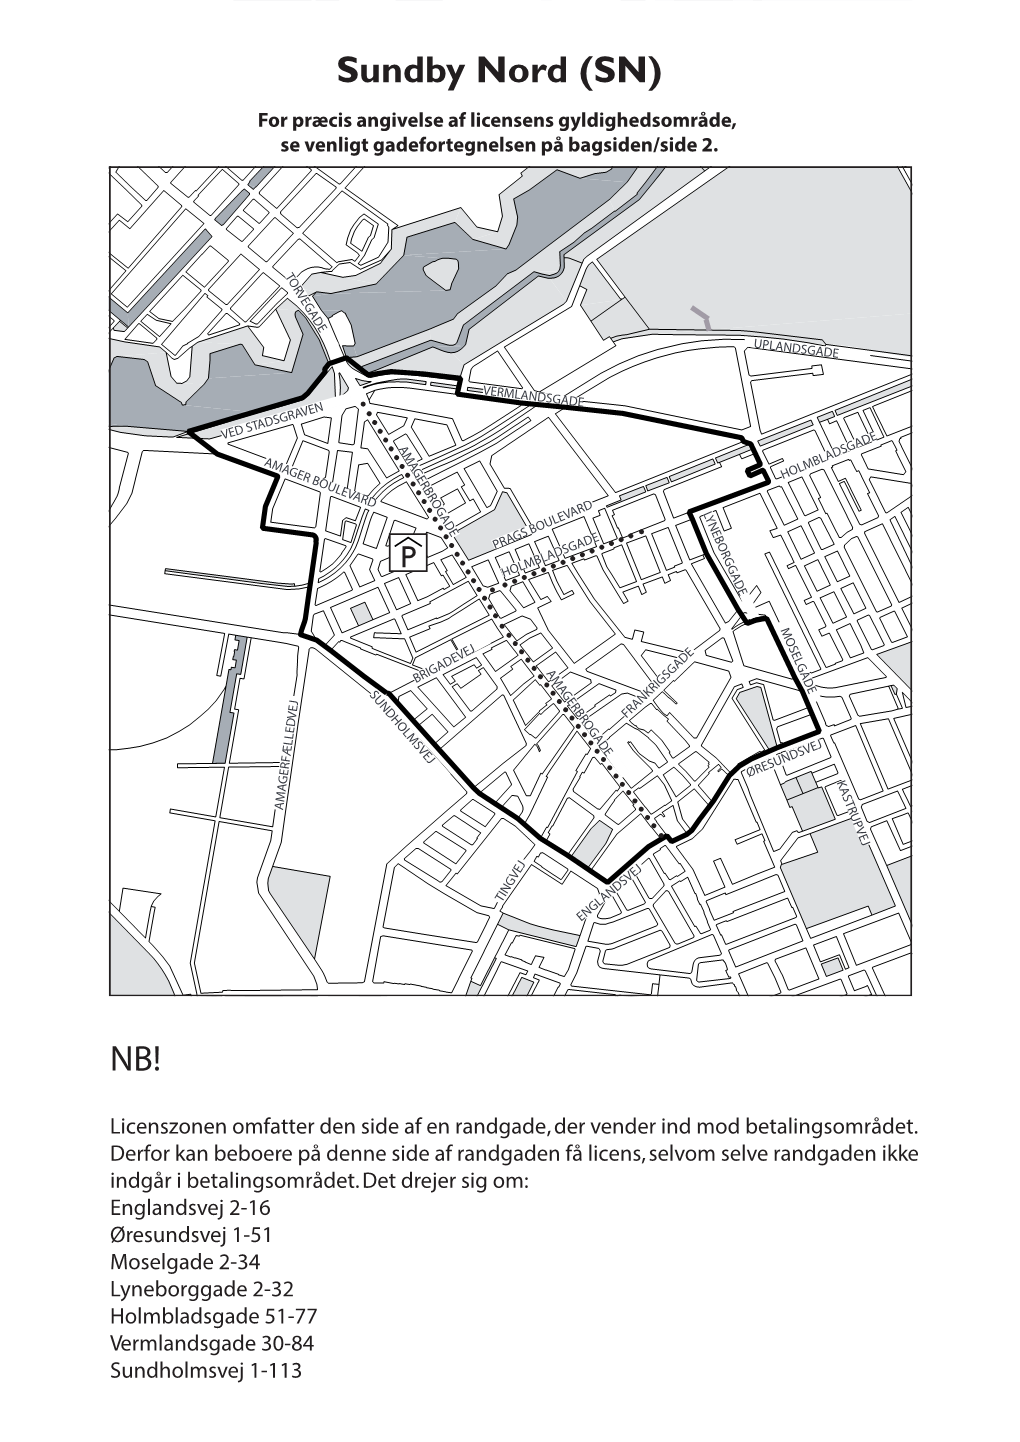 Sundby Nord (SN) for Præcis Angivelse Af Licensens Gyldighedsområde, Se Venligt Gadefortegnelsen På Bagsiden/Side 2